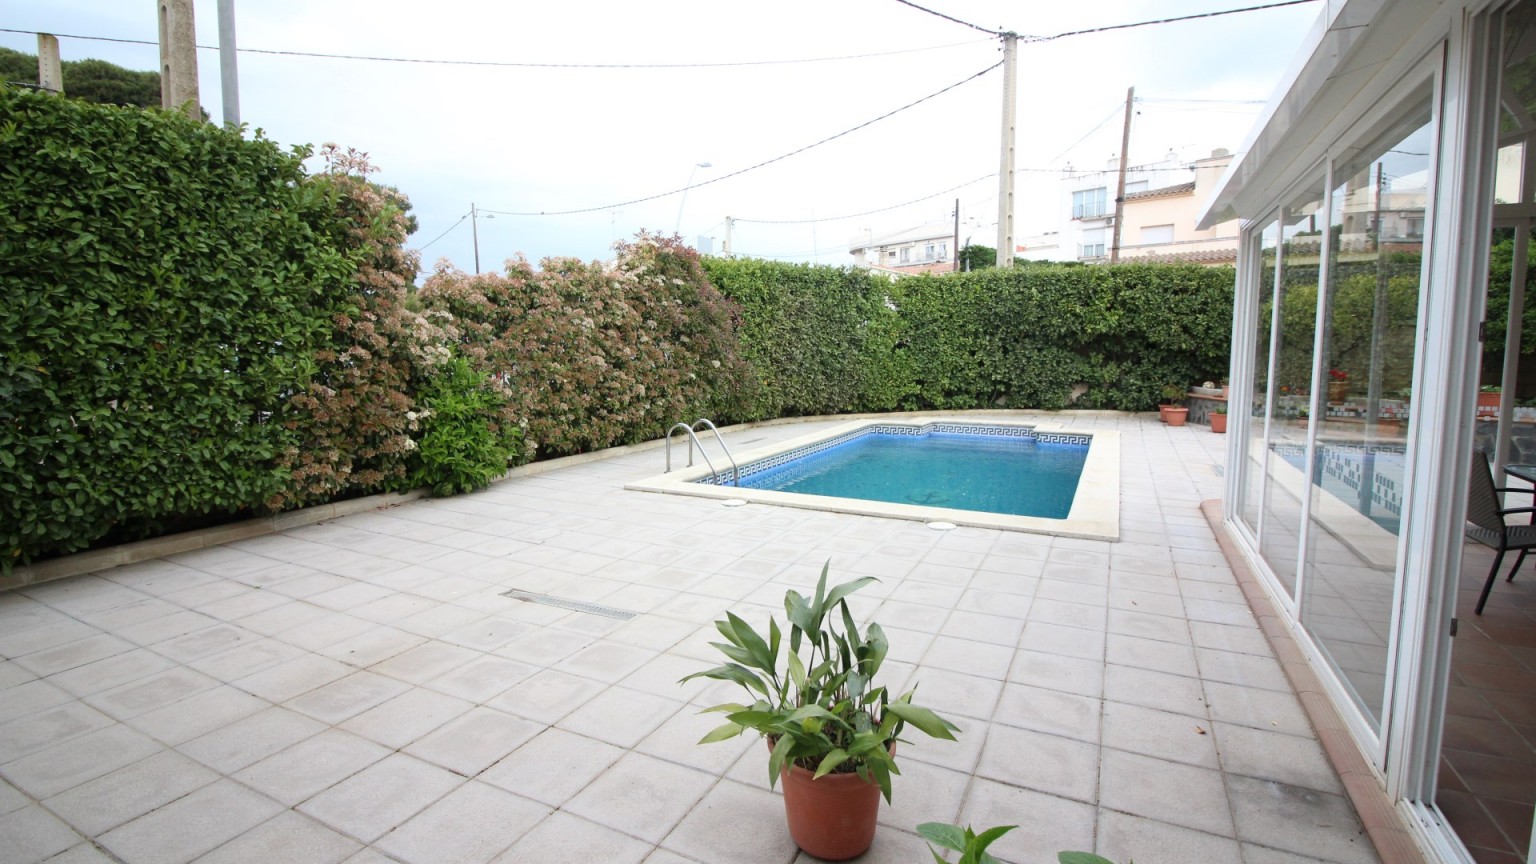 En venda casa de 3 plantes a Mas Mates (Roses). Consta de 5 habitacions i 3 lavabos. Amb piscina privada, jardí al voltant, un hort i un garatge molt gran.